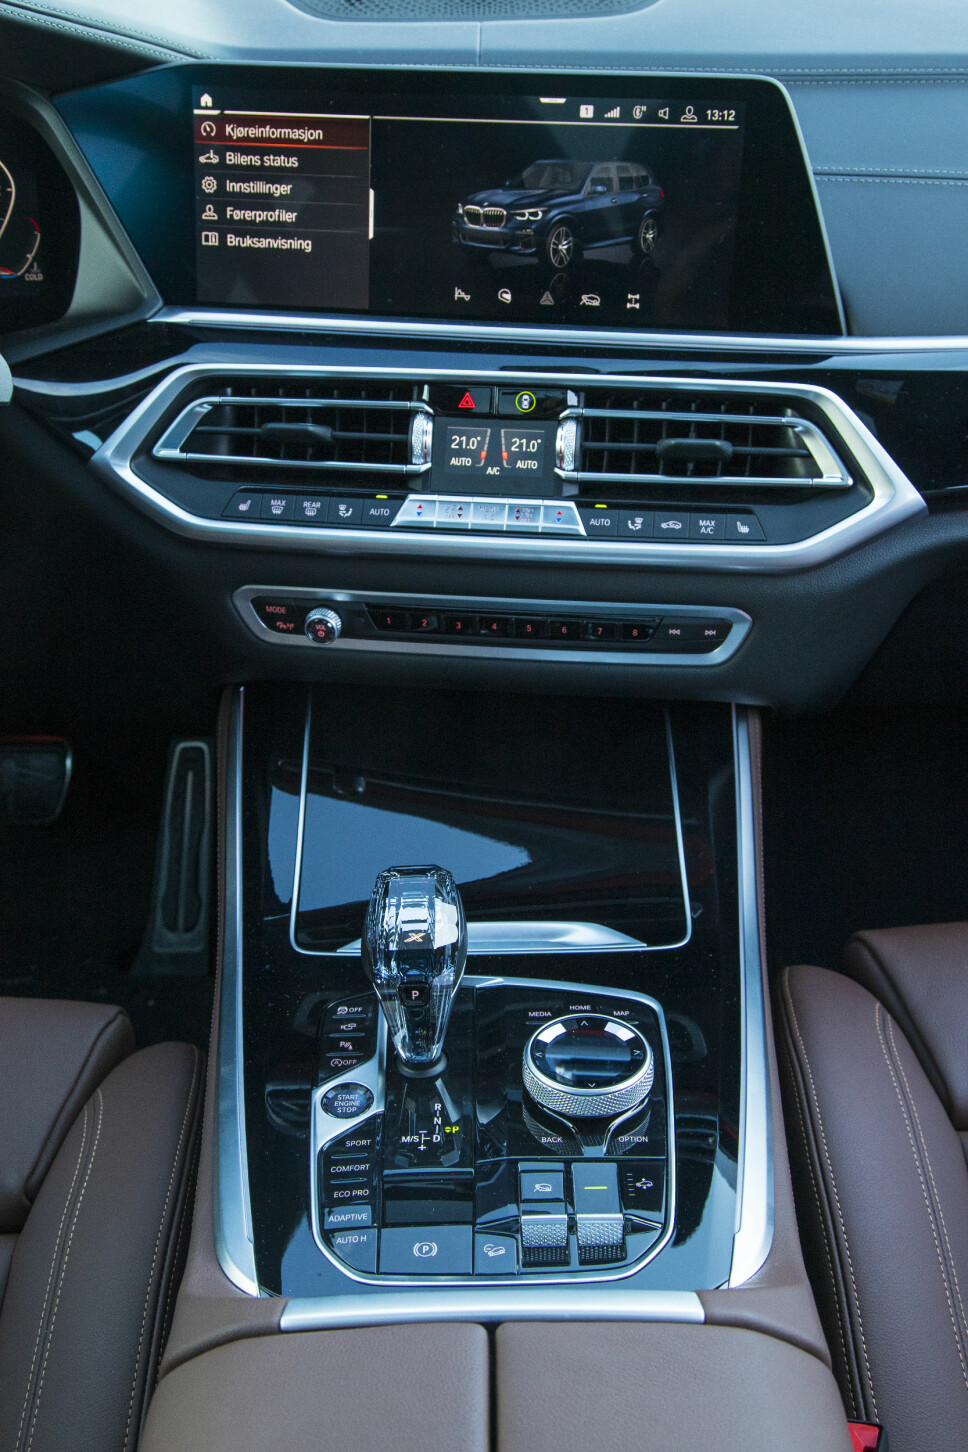 BMW X5 INSTRUMENTER: Heldigitalt dashbord i nye BMW X5, god betjeningsløsning på ratt.